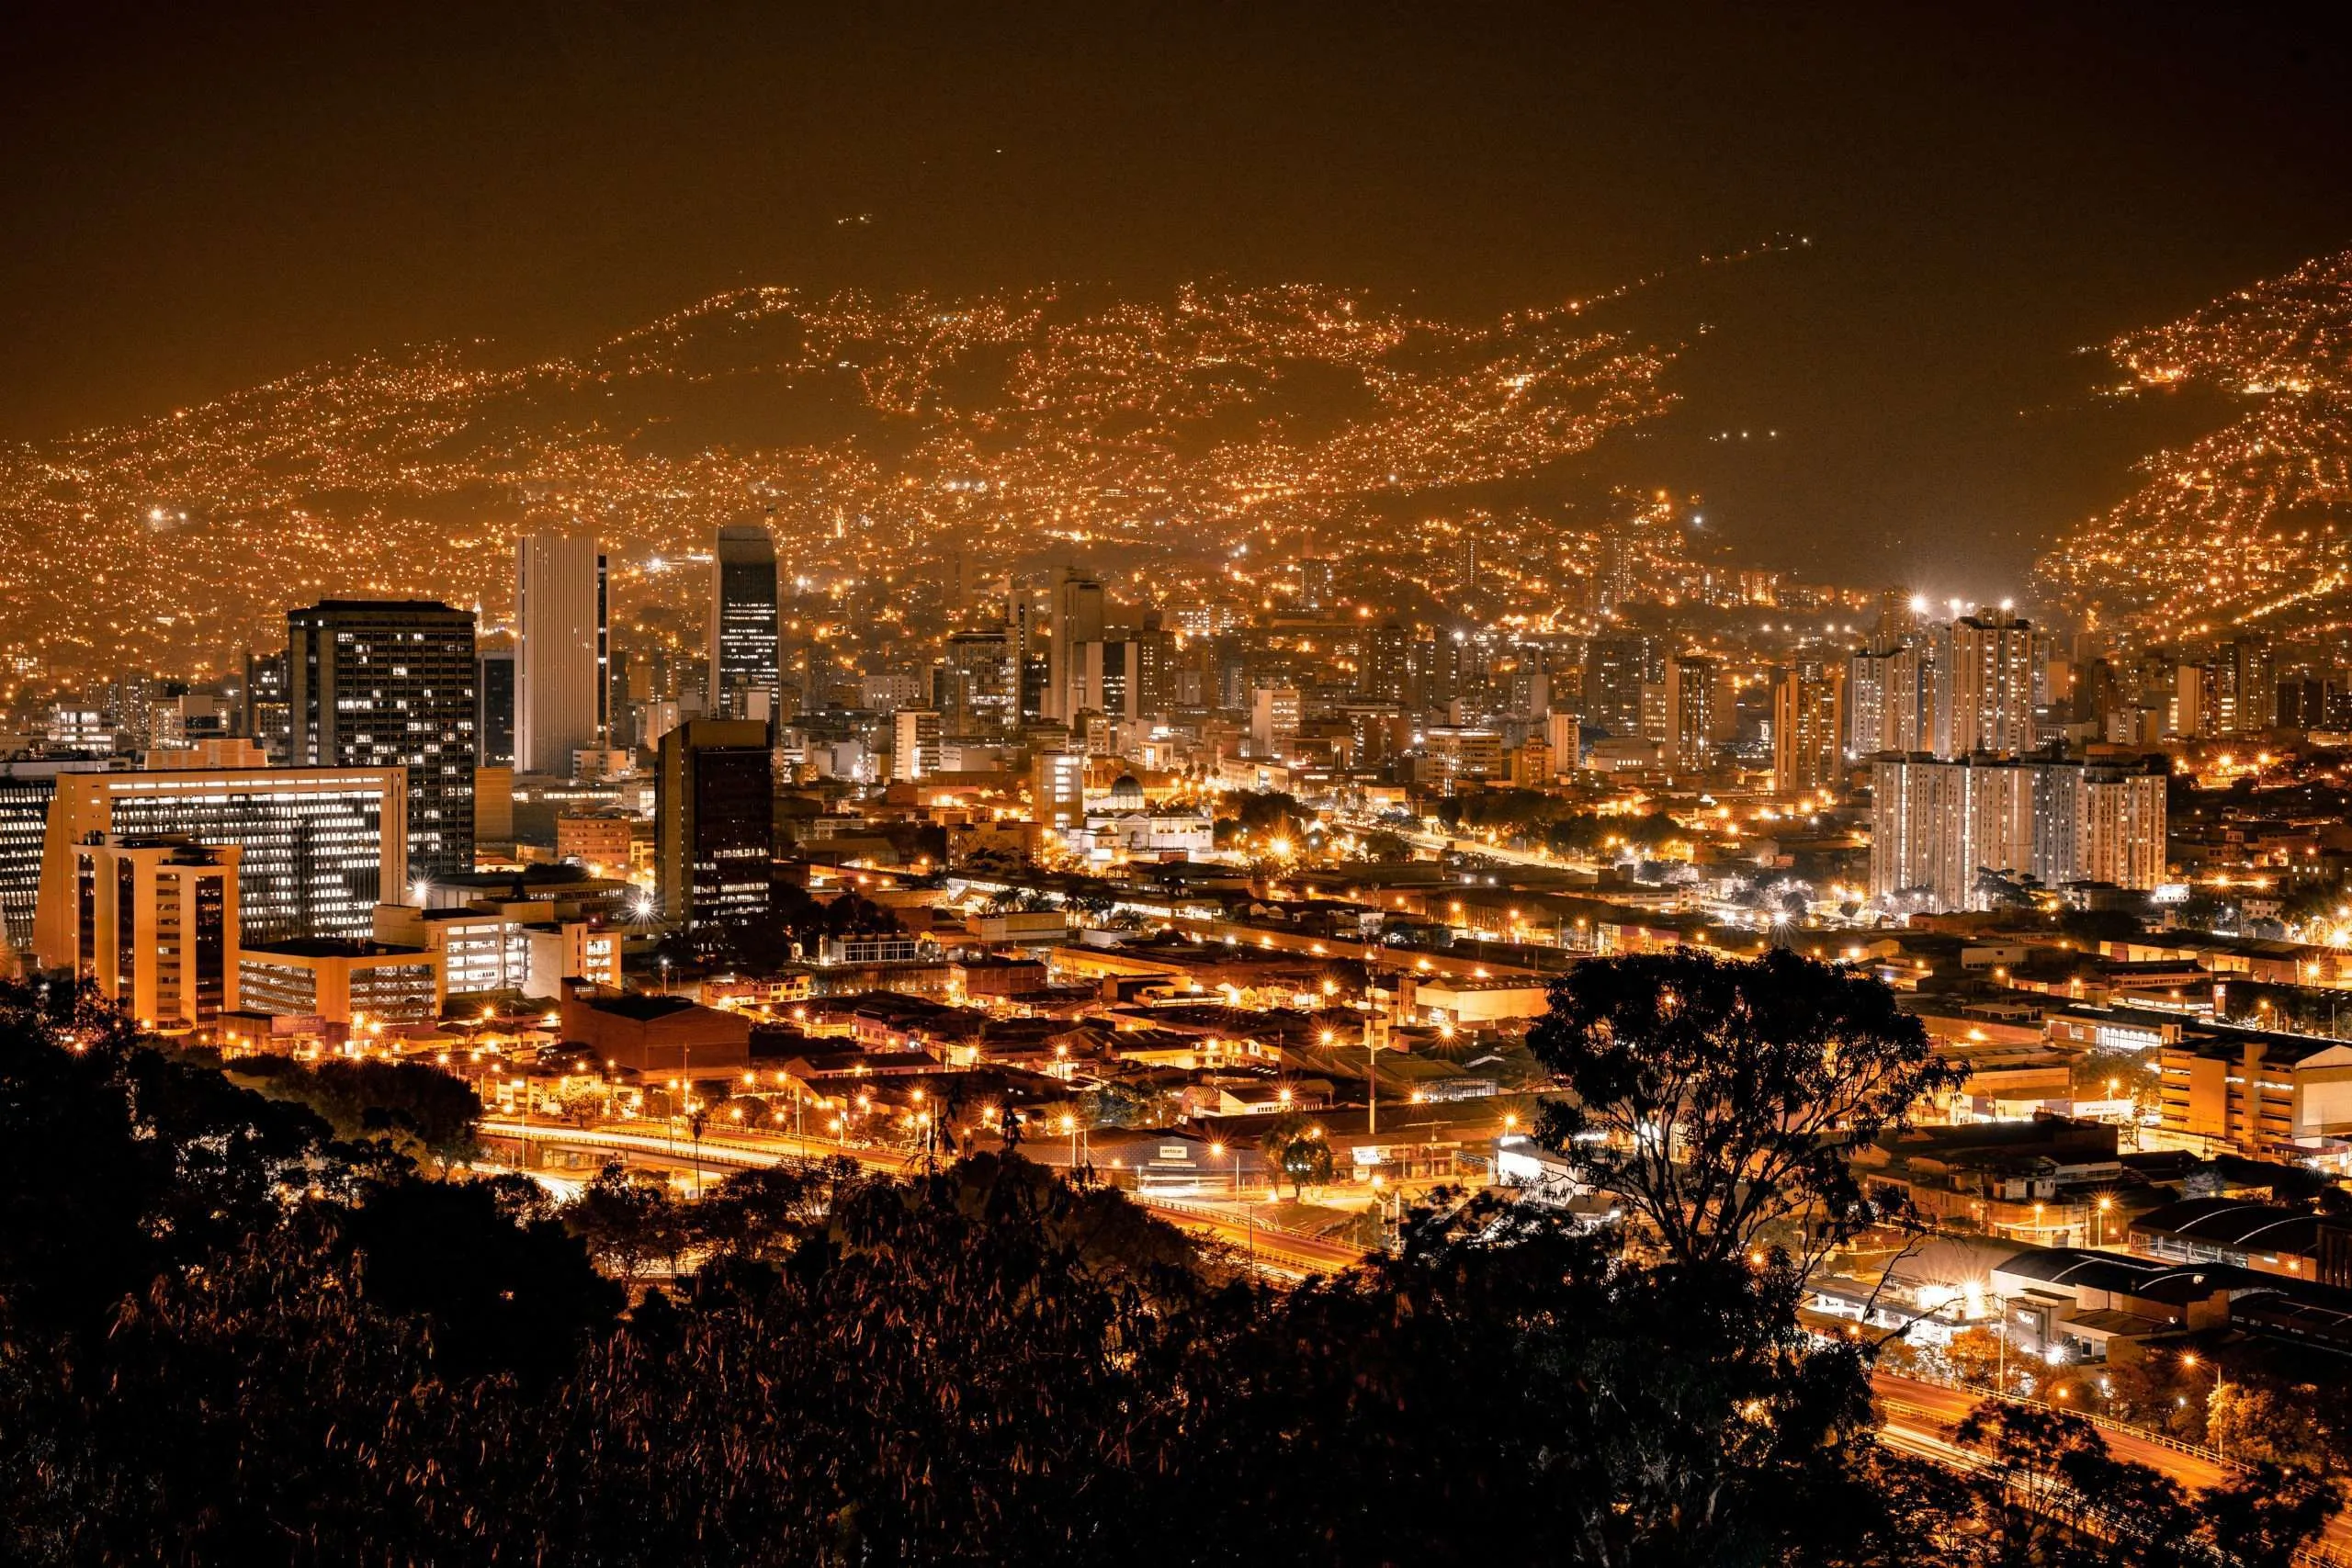 Most Instagrammable Spot in Medellin